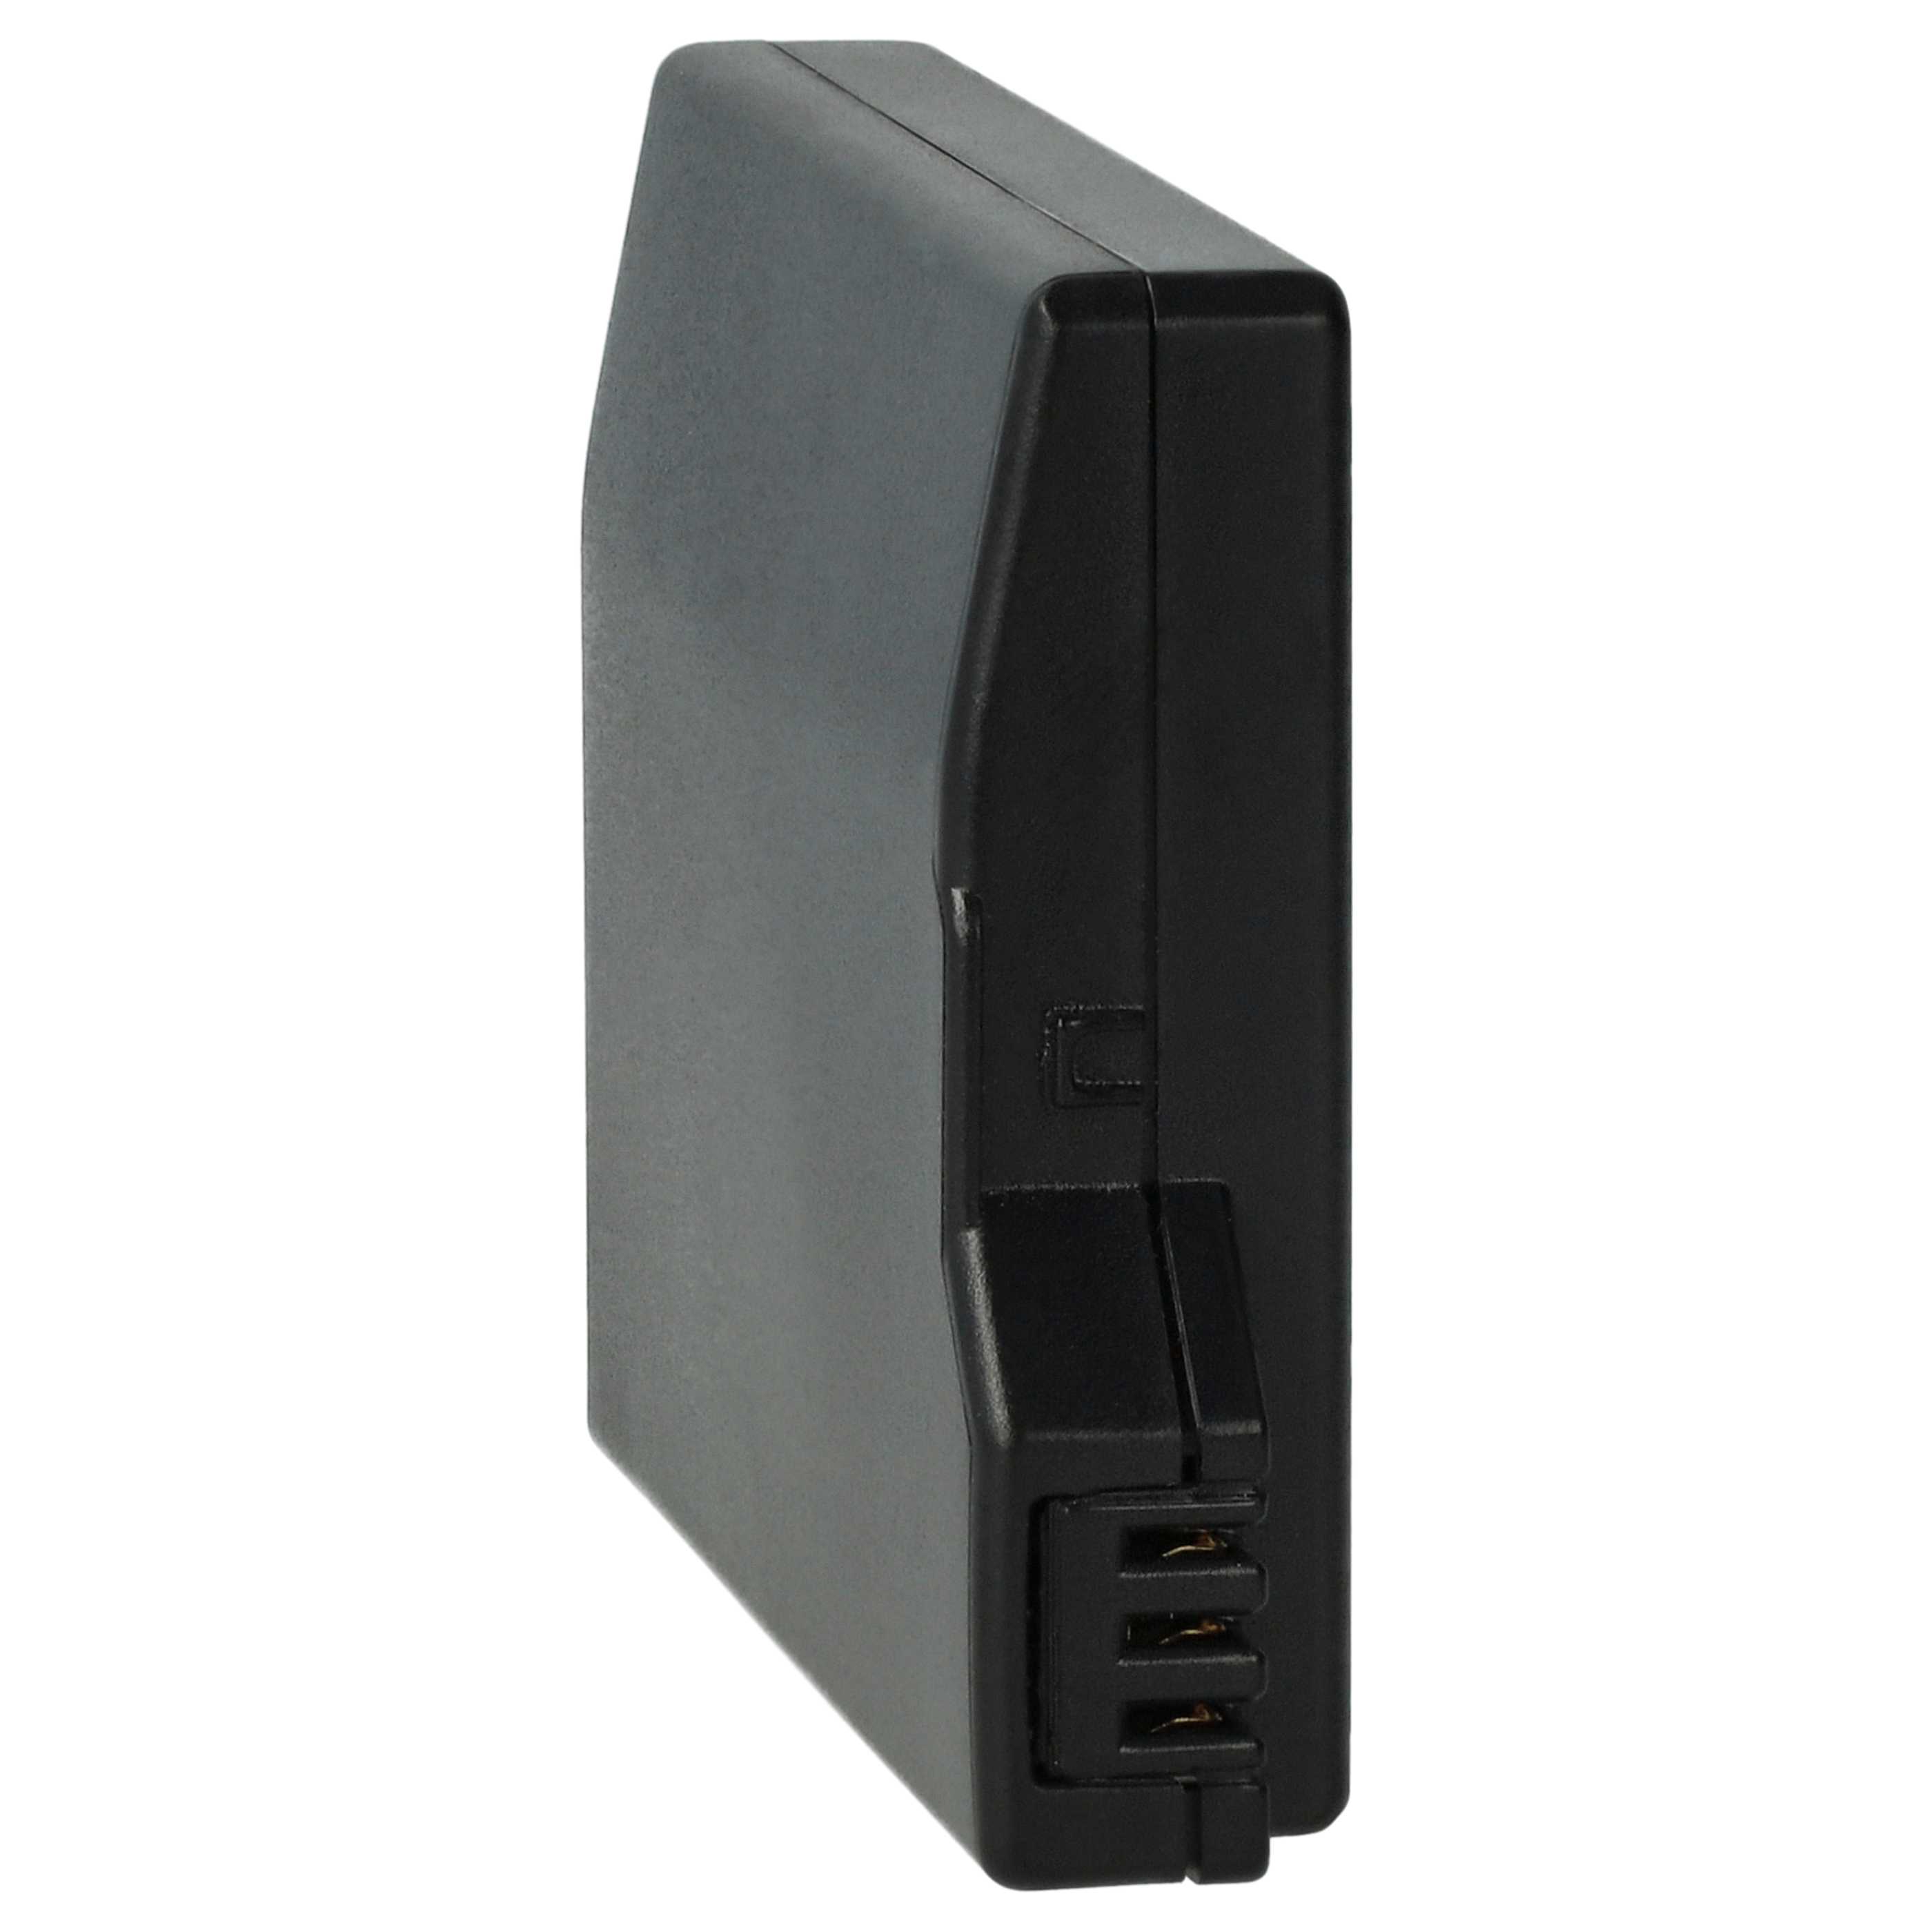 Akumulator do konsoli Sony zamiennik Sony PSP-S110 - 1200 mAh, 3,7 V